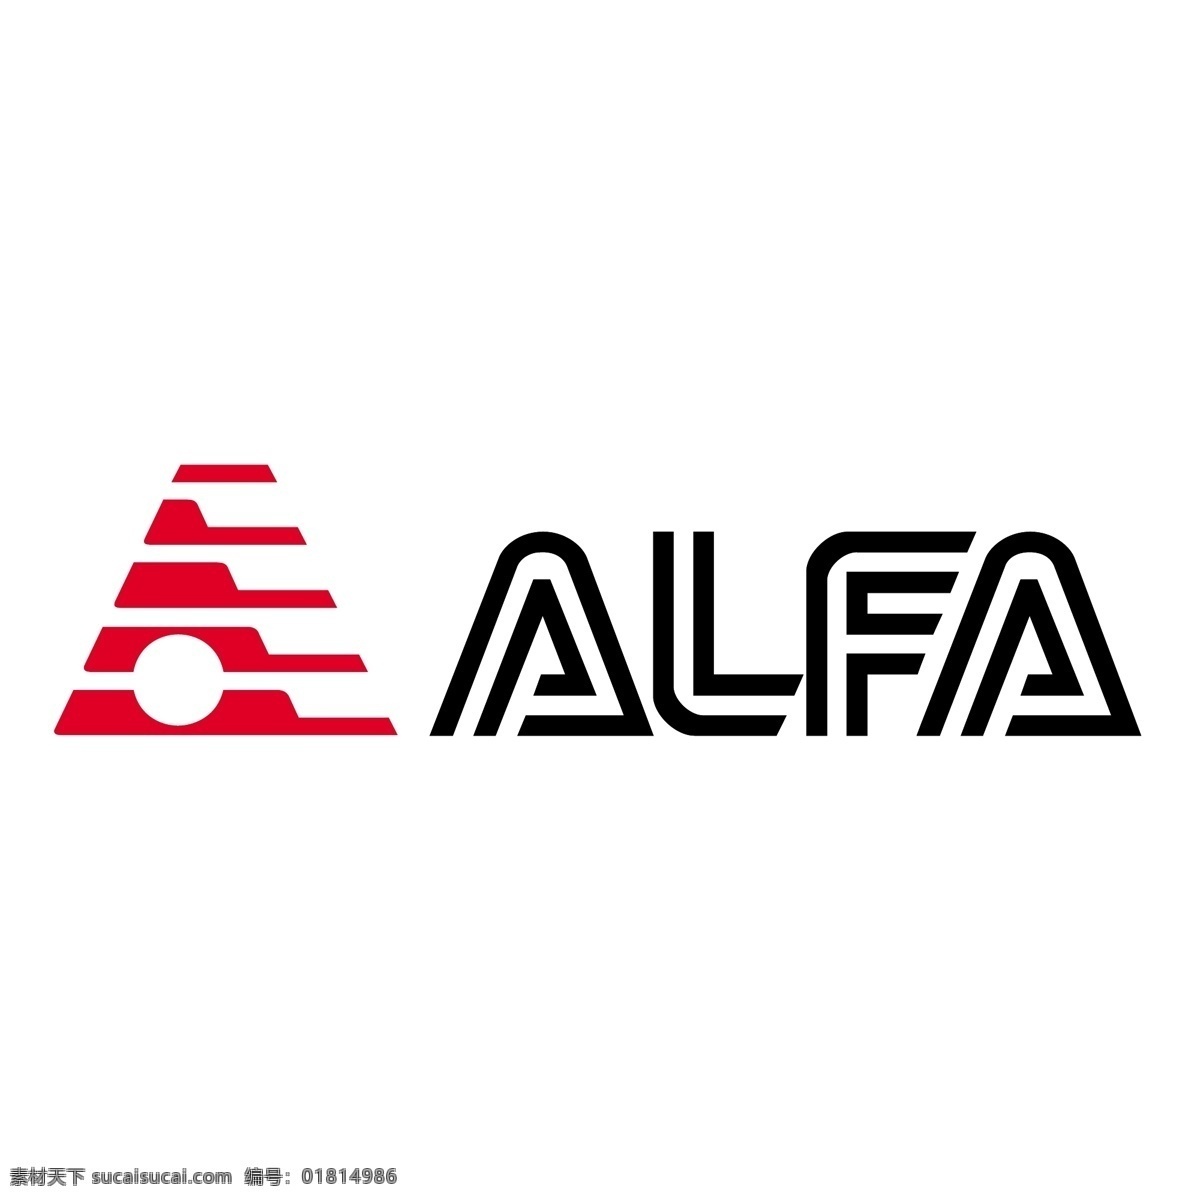 阿尔法5 阿尔法 罗密欧 标志 矢量 giulietta logo 格式 spider 汽车 矢量图 建筑家居